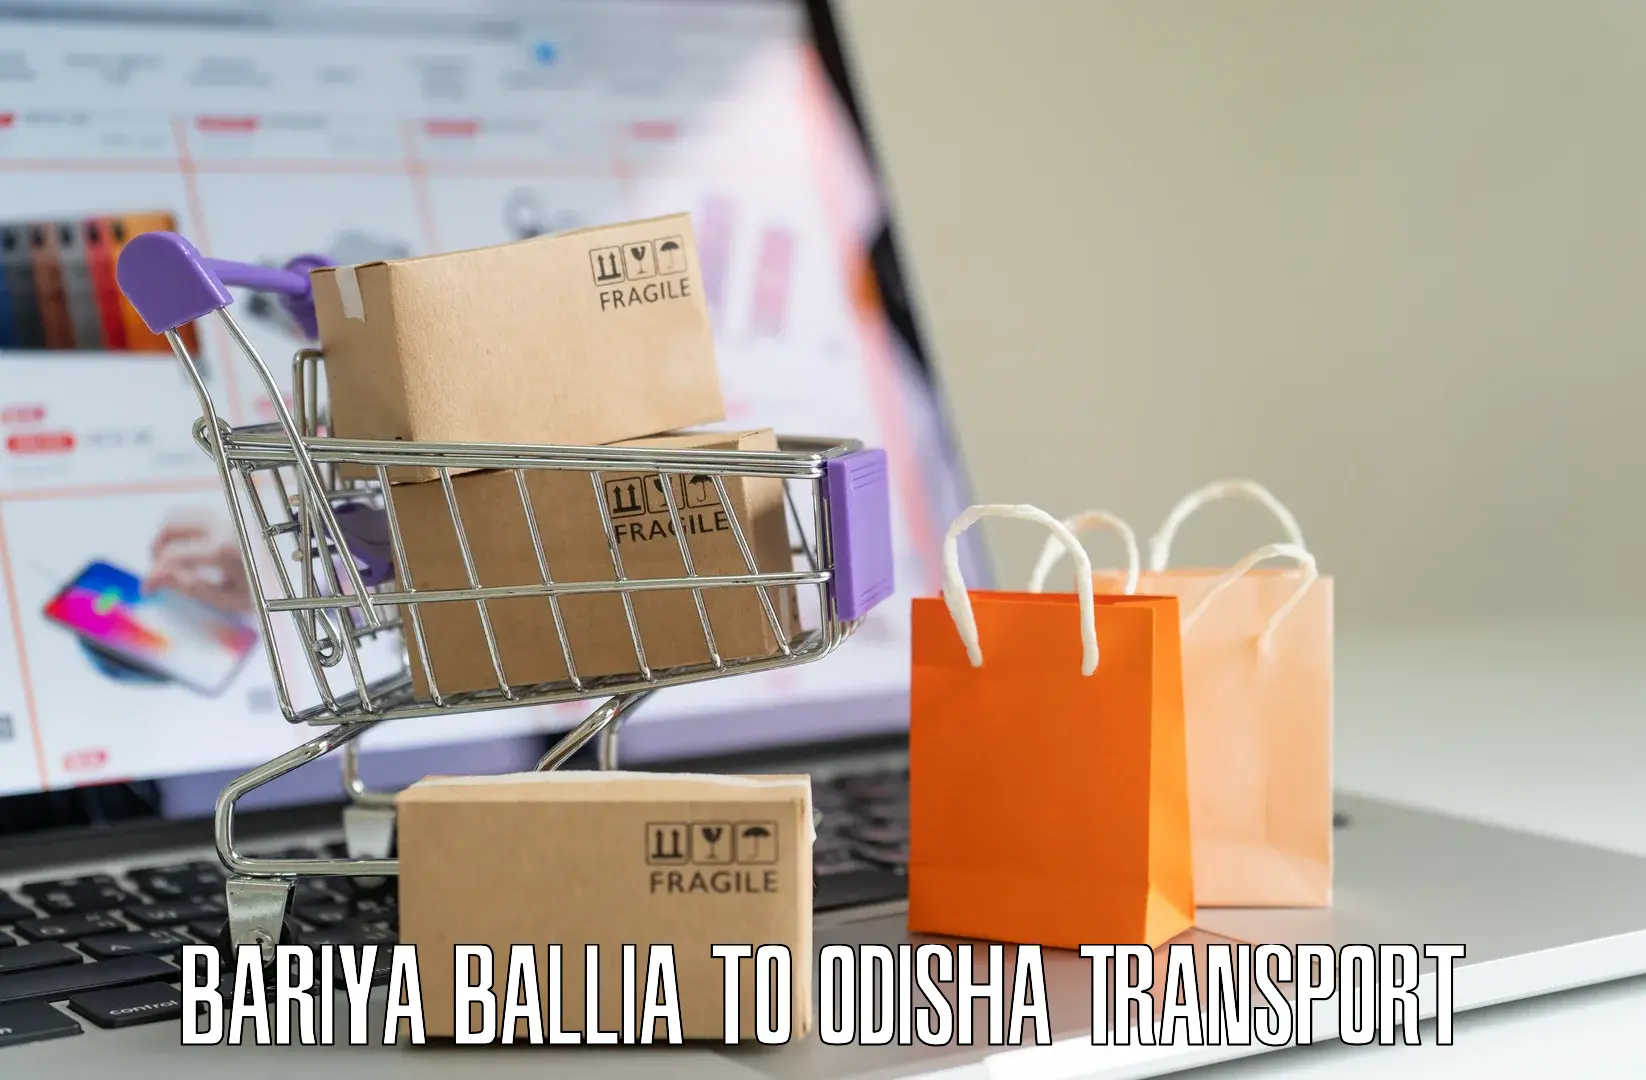 Container transport service Bariya Ballia to Odisha